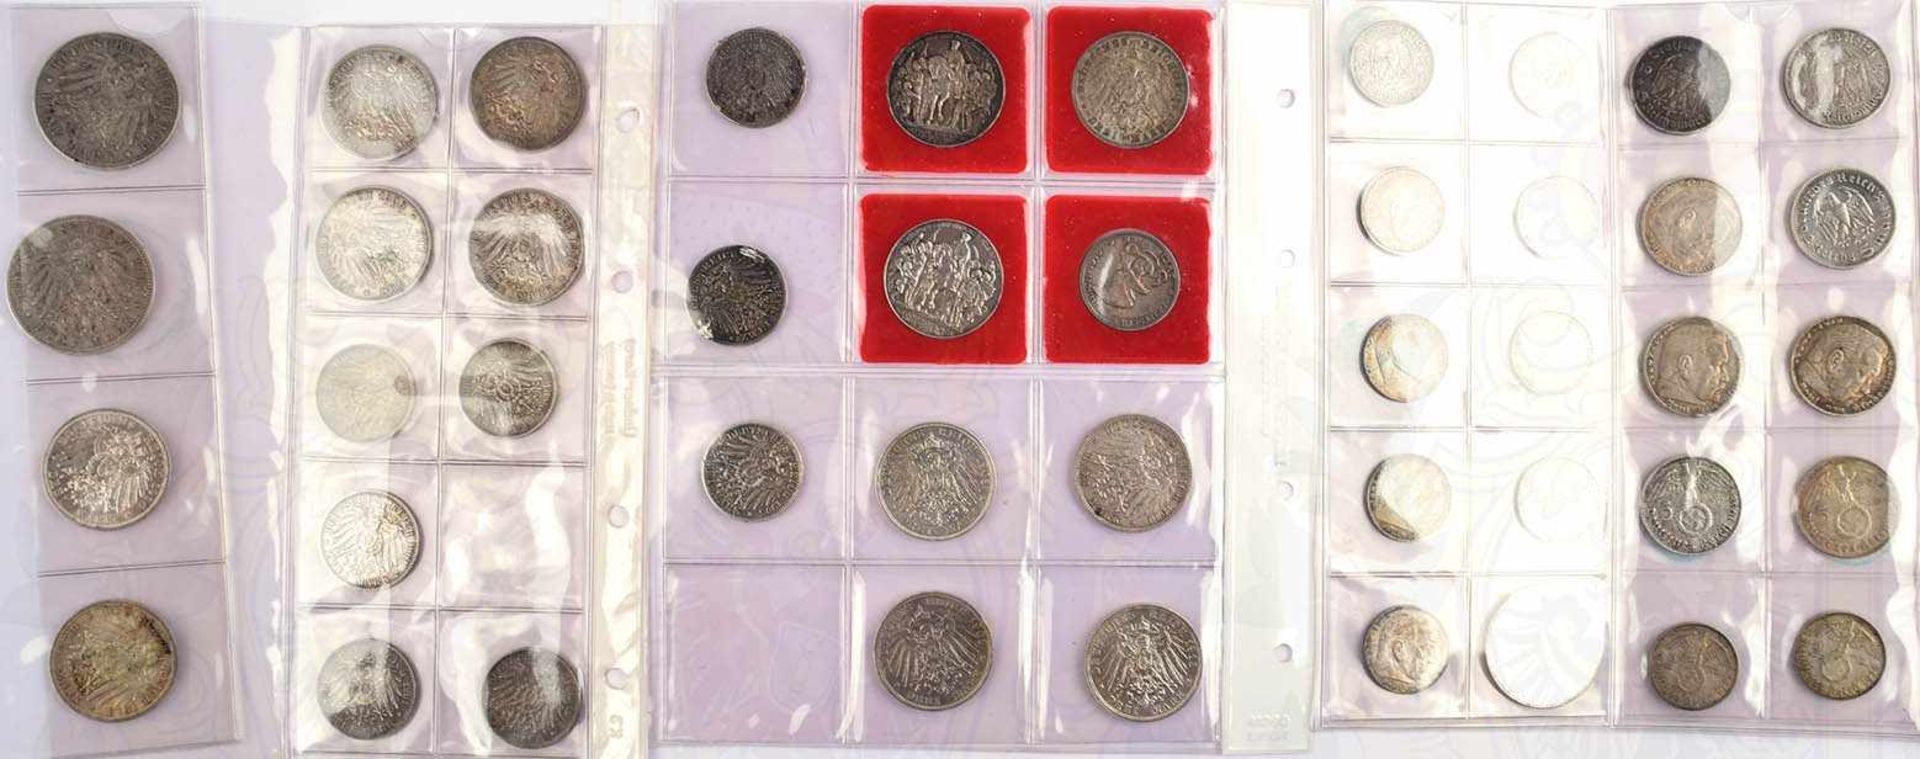 MÜNZENALBUM, mit 62 Silbermünzen u. 78 Kleinmünzen, meist Preußen, etwas Sachsen, Württemberg, - Bild 2 aus 2